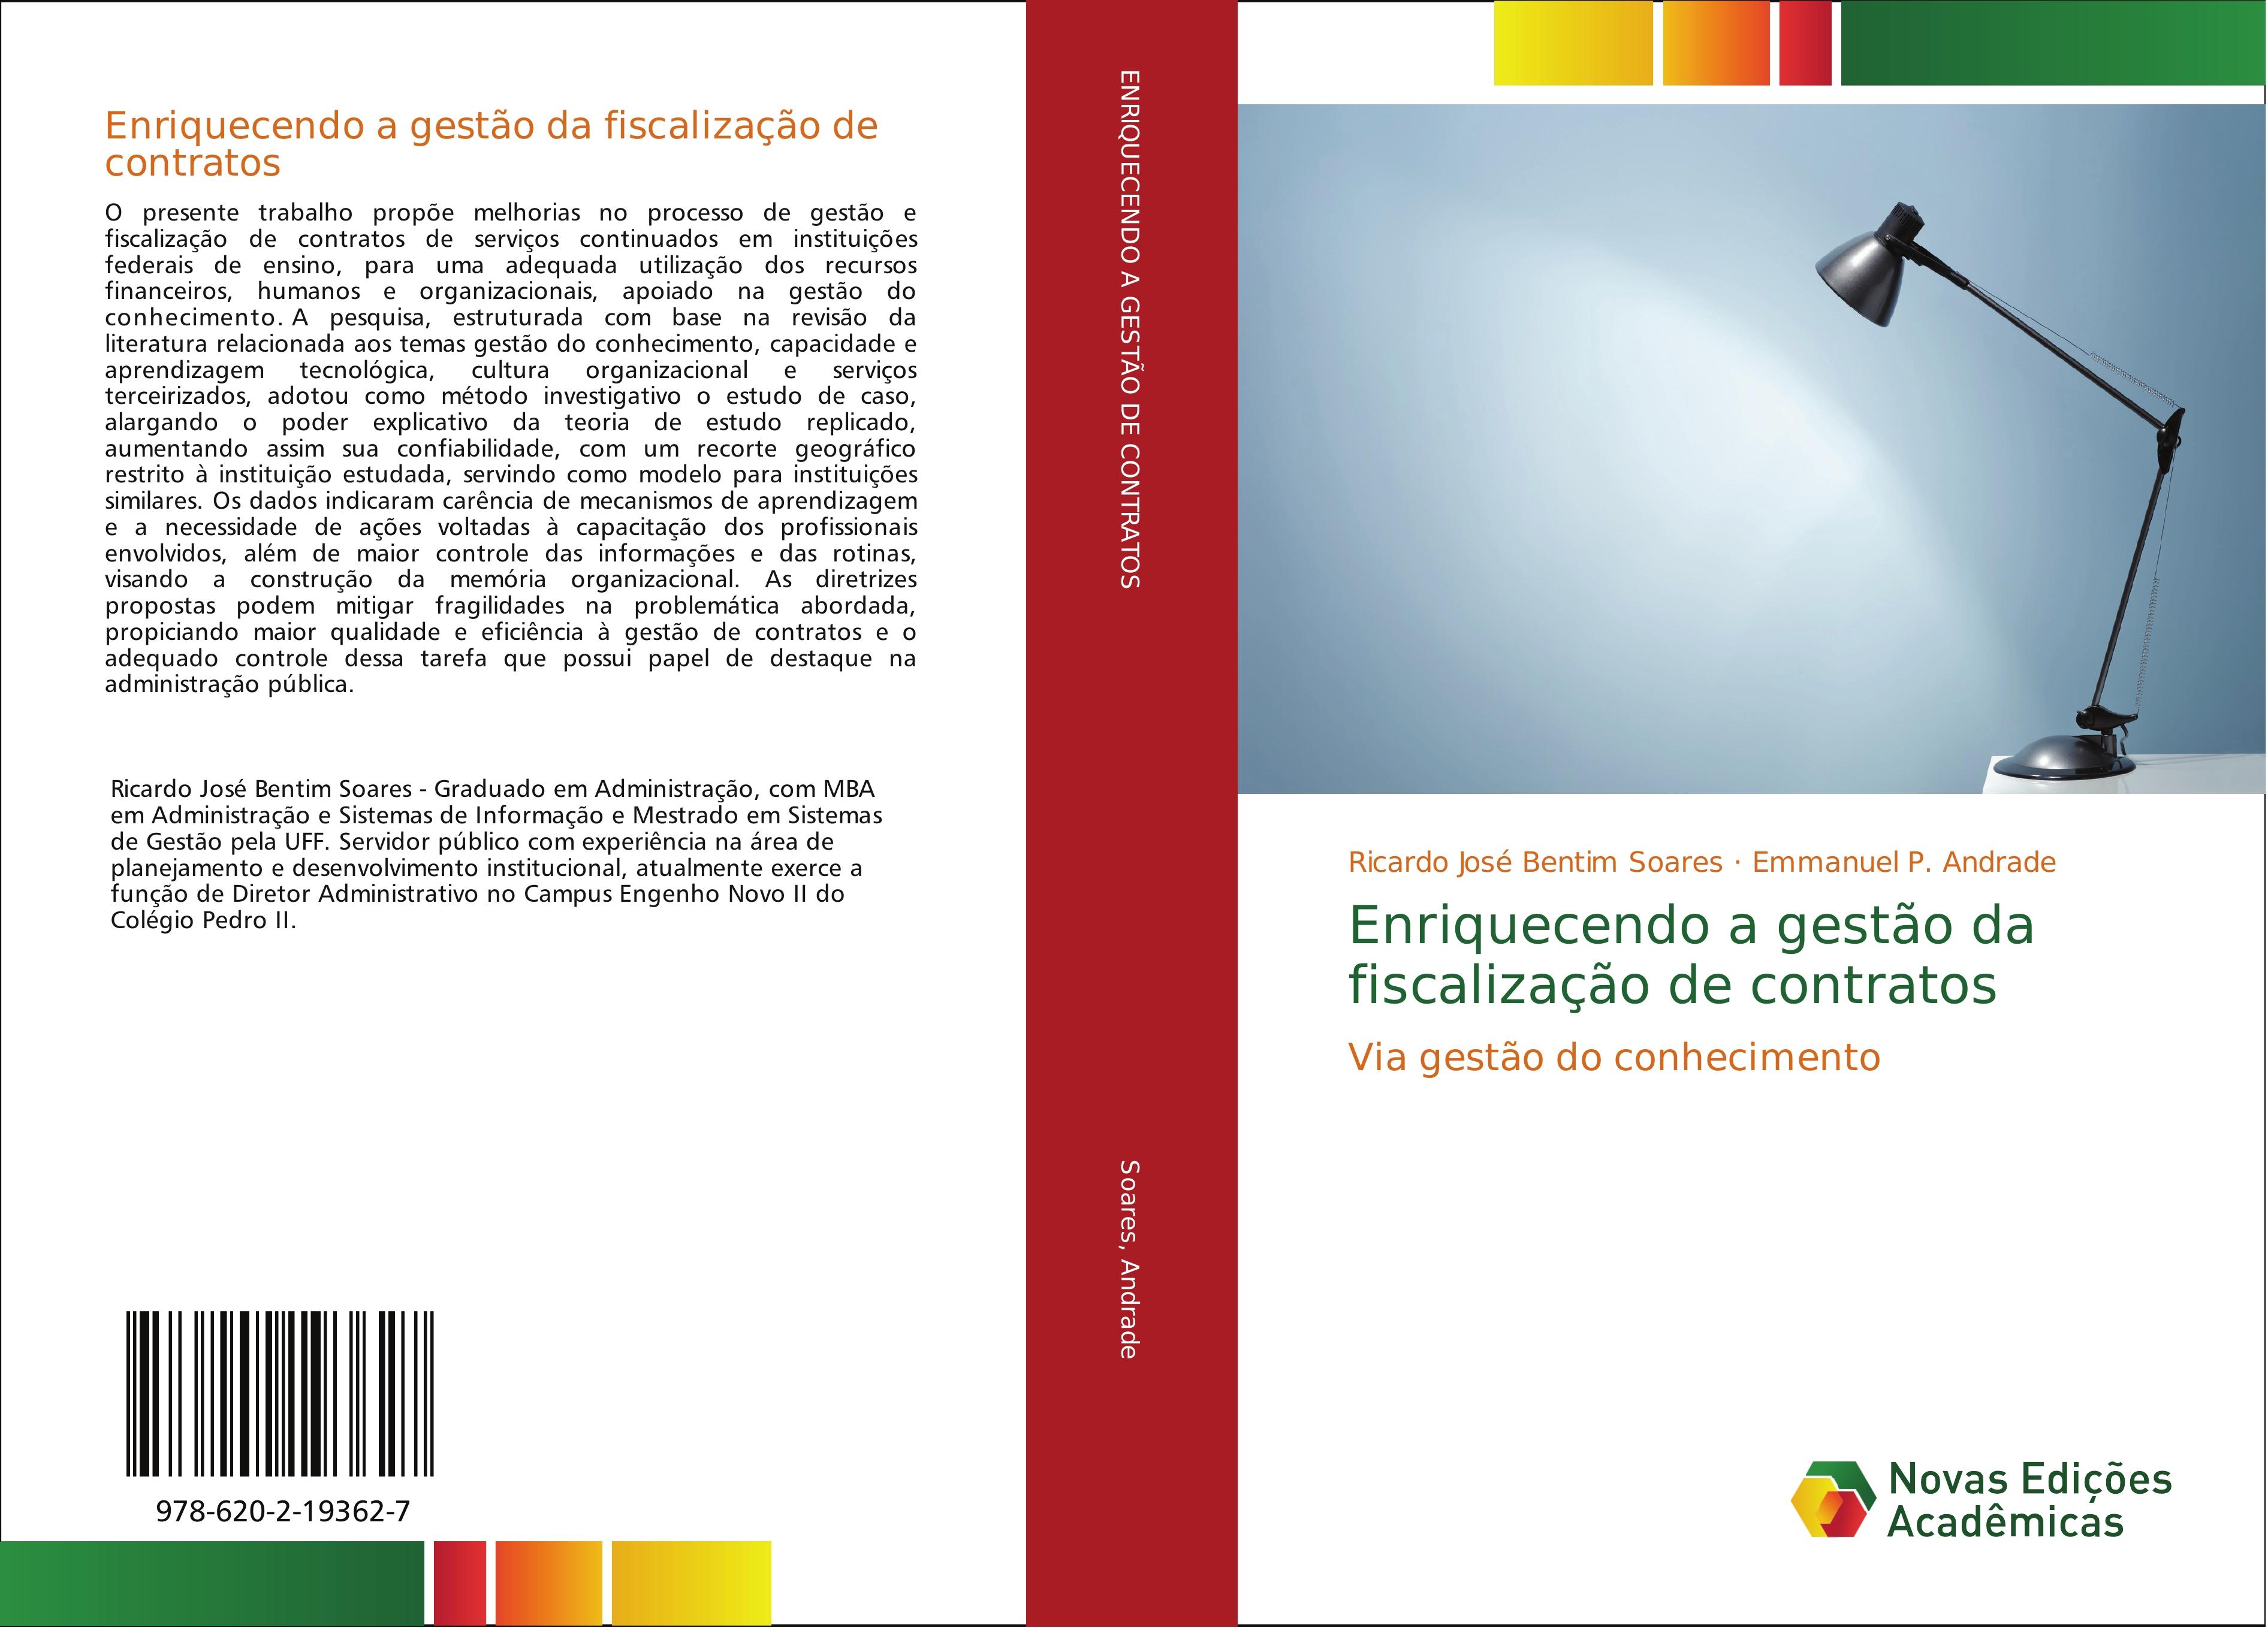 Enriquecendo a gestão da fiscalização de contratos - Ricardo José Bentim Soares Emmanuel P. Andrade